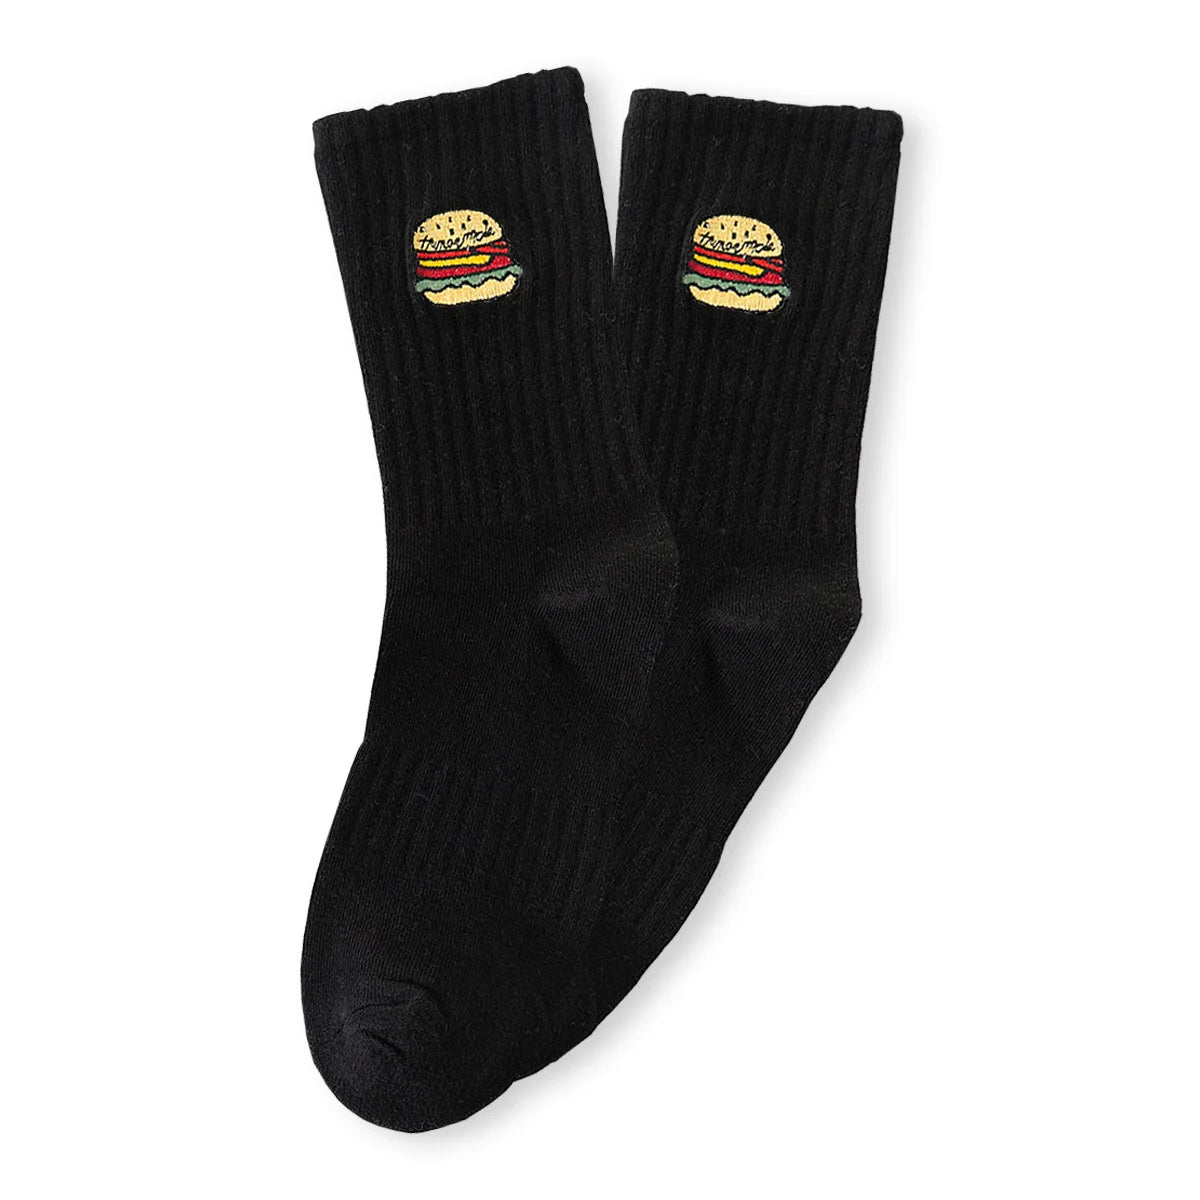 Chaussettes noir adultes en coton avec un burger brodé | Chaussettes abordables et de haute qualité | Un excellent choix pour les adultes qui aiment la nourriture et les burgers |